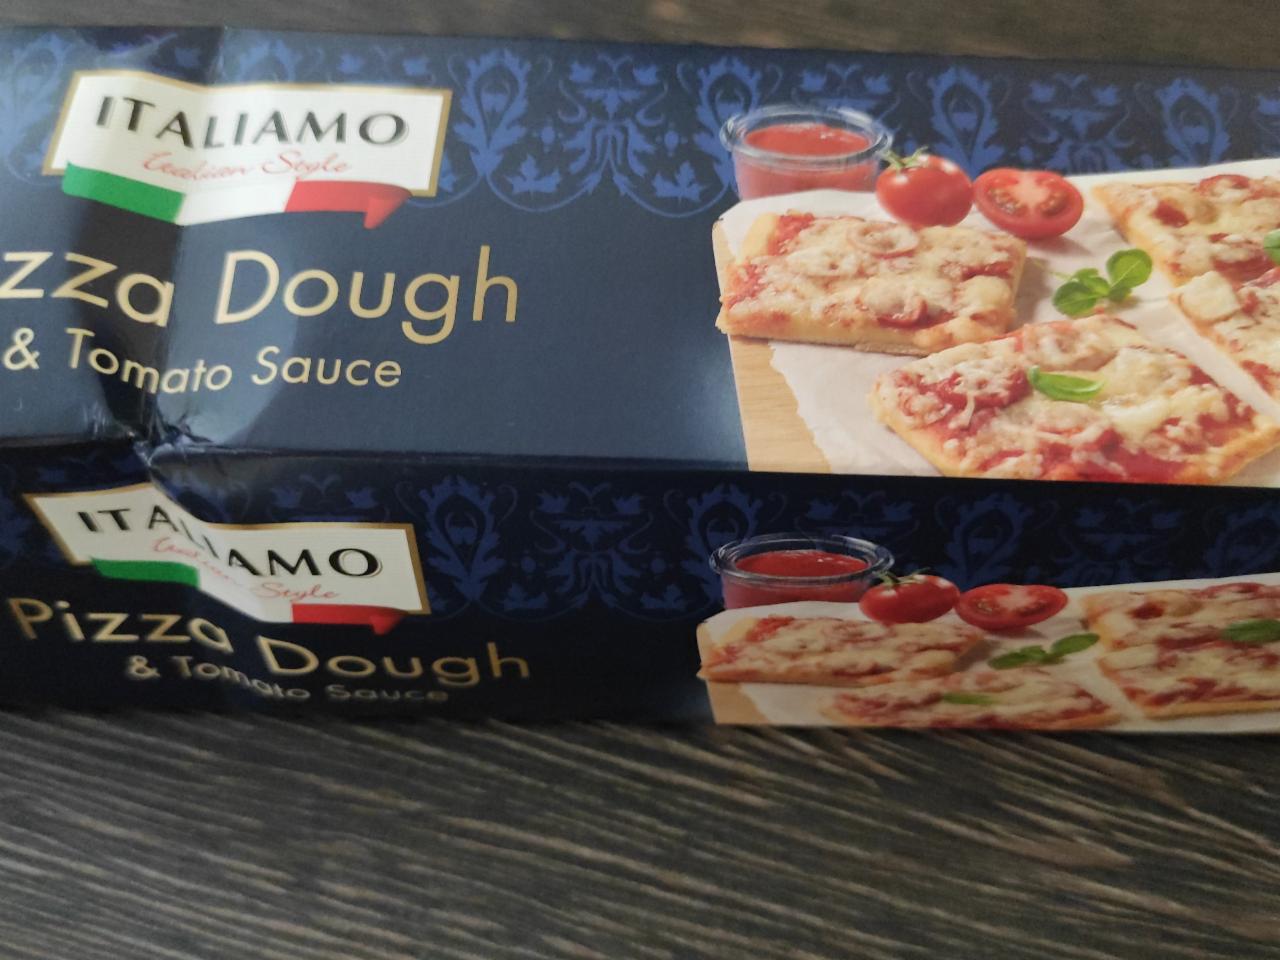 Zdjęcia - Pizza Dough & Tomato Sauce italiamo